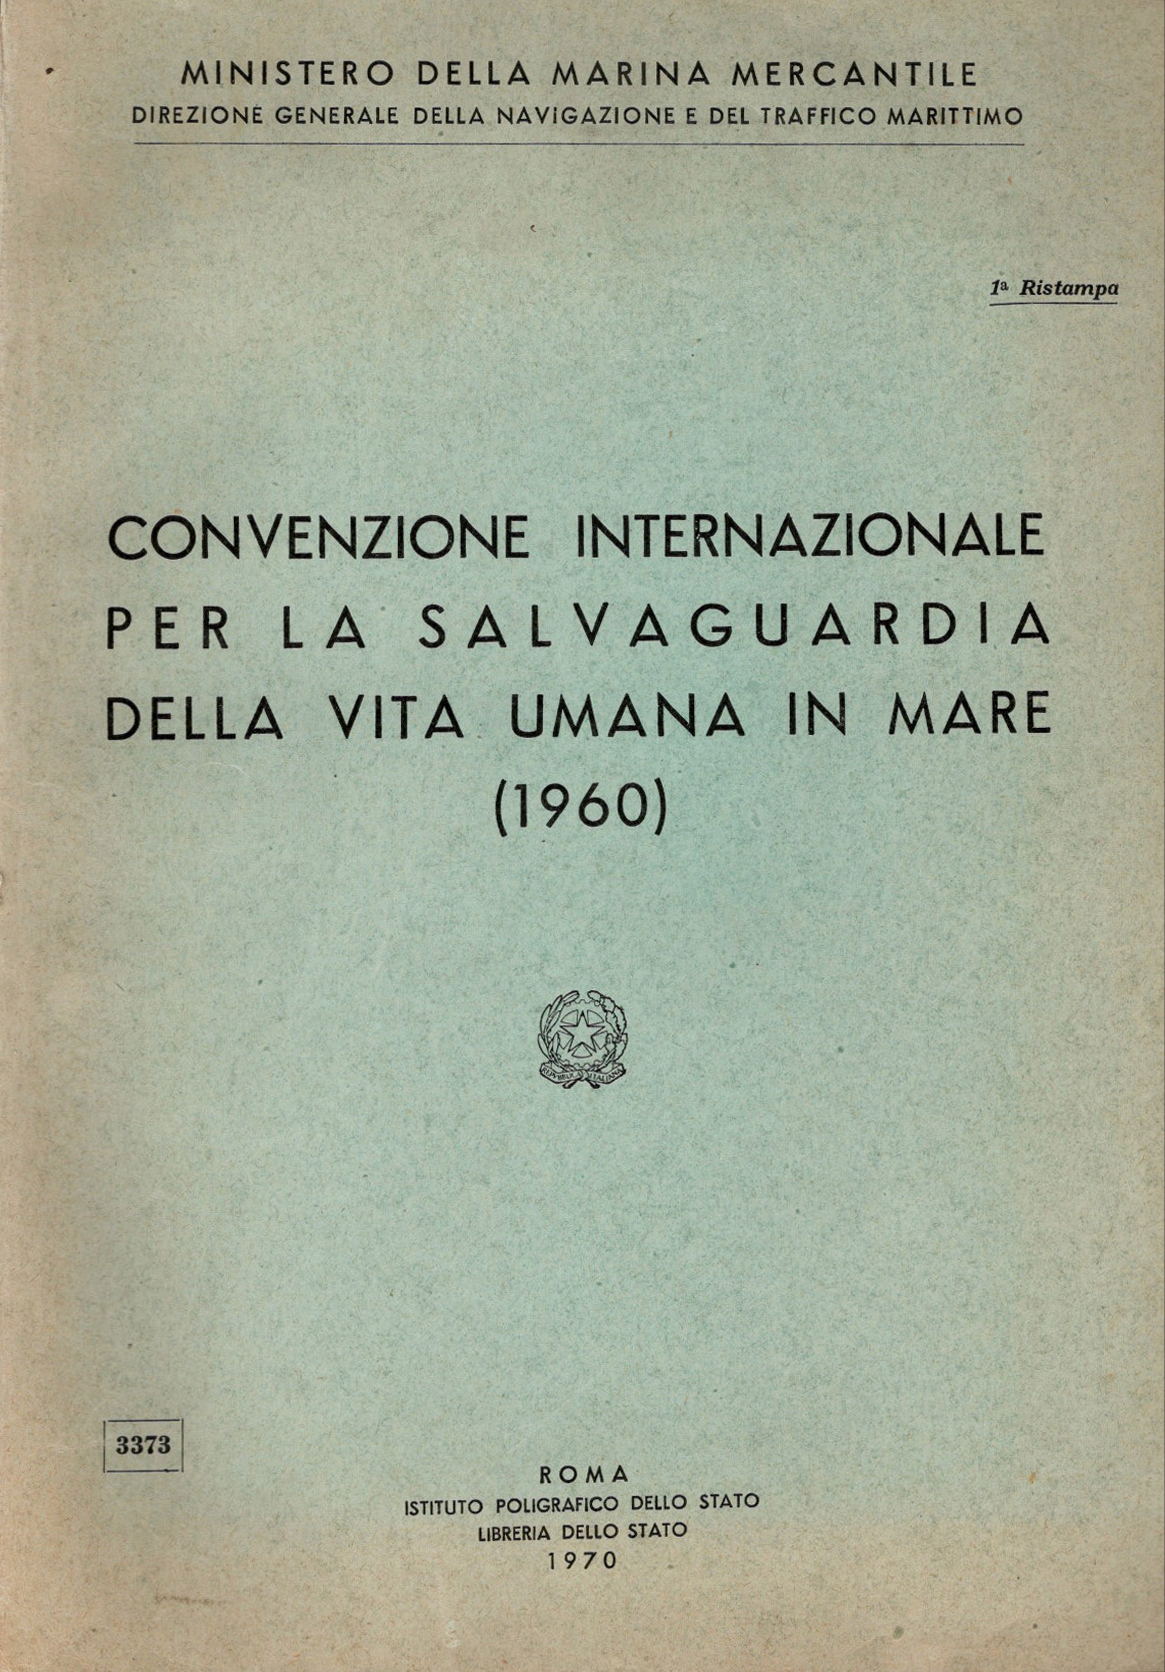 1960 Convenzione internazionale per la salvaguardia della vita umana in mare